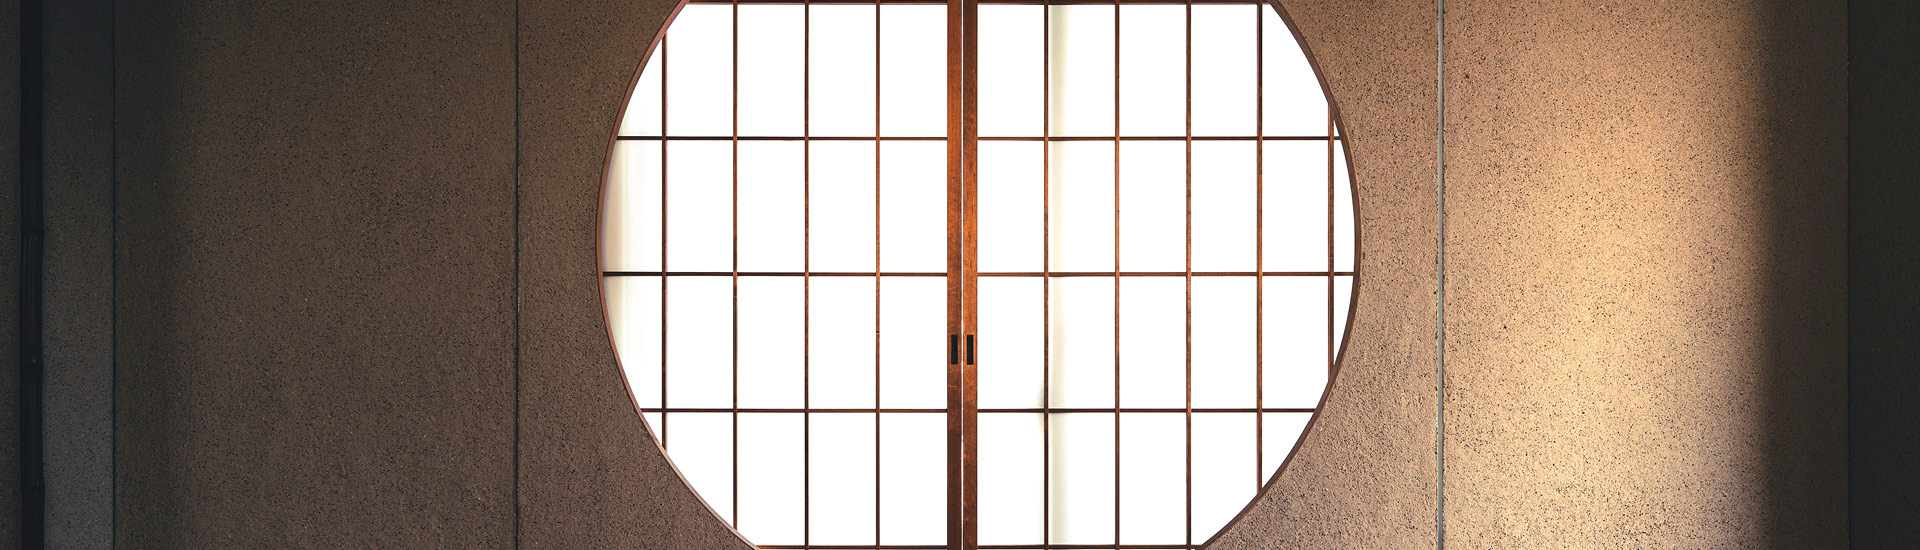 Janela redonda com portas de papel em sala japonesa.